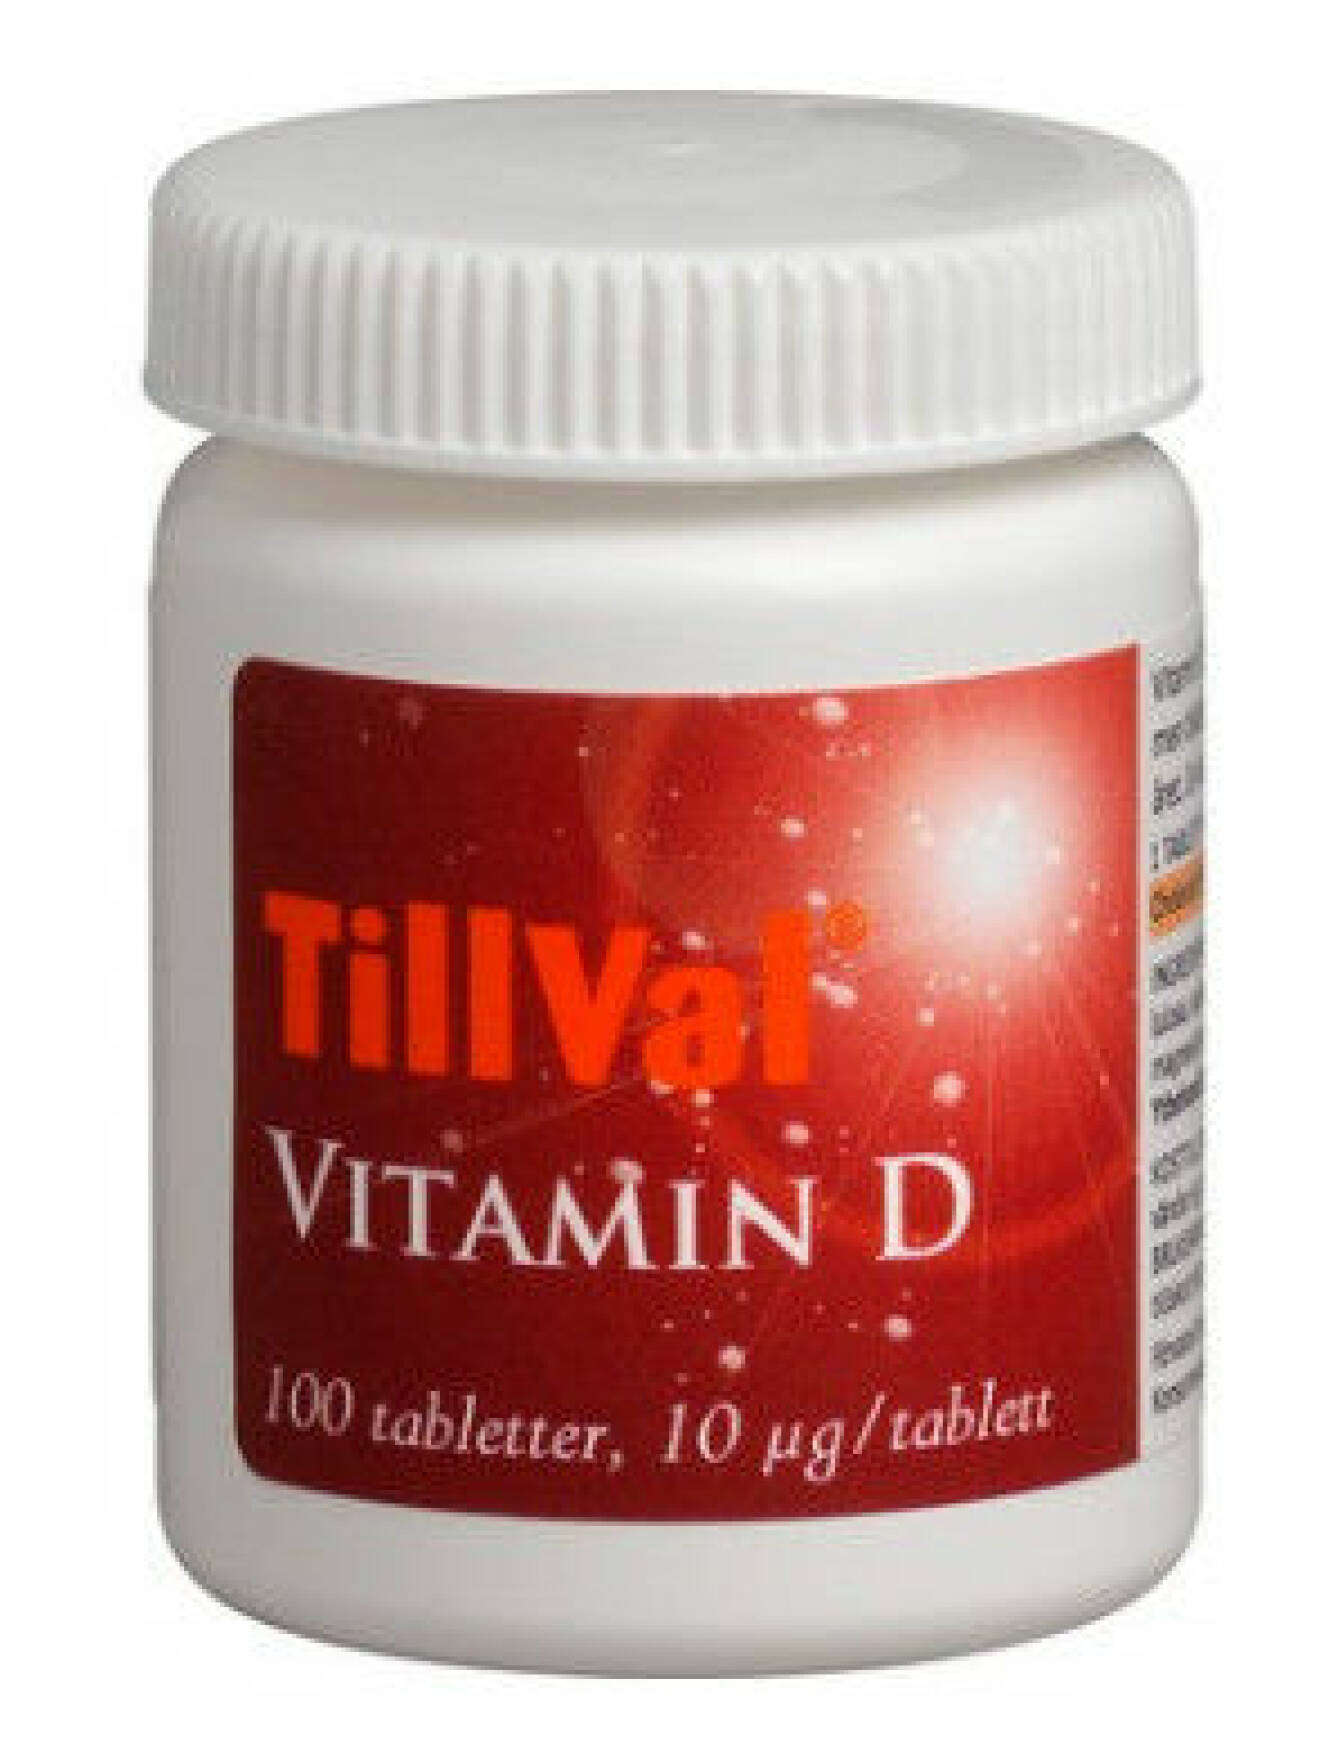 D-vitamintillskott från TillVal.